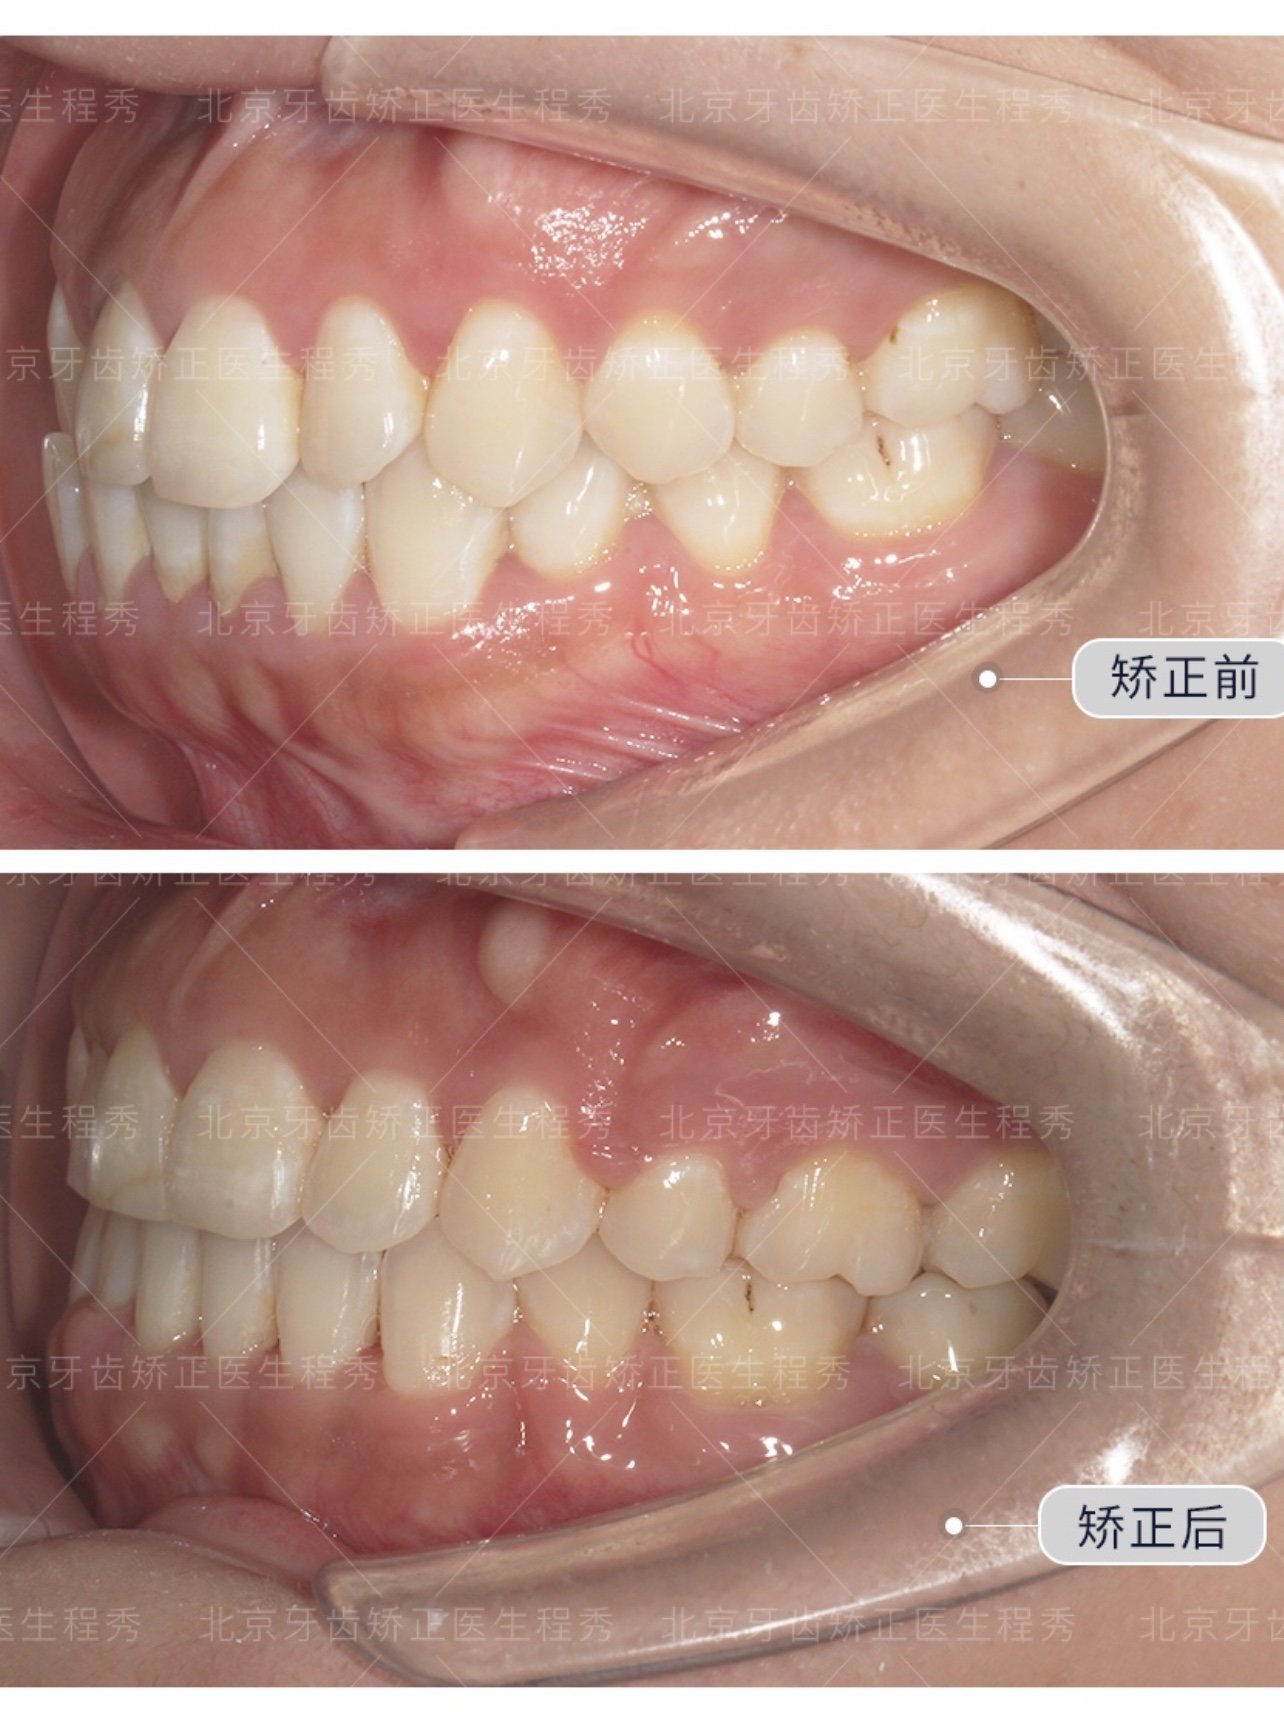 患者因为牙齿微突做矫正,拥挤前突集中在牙弓前部,经